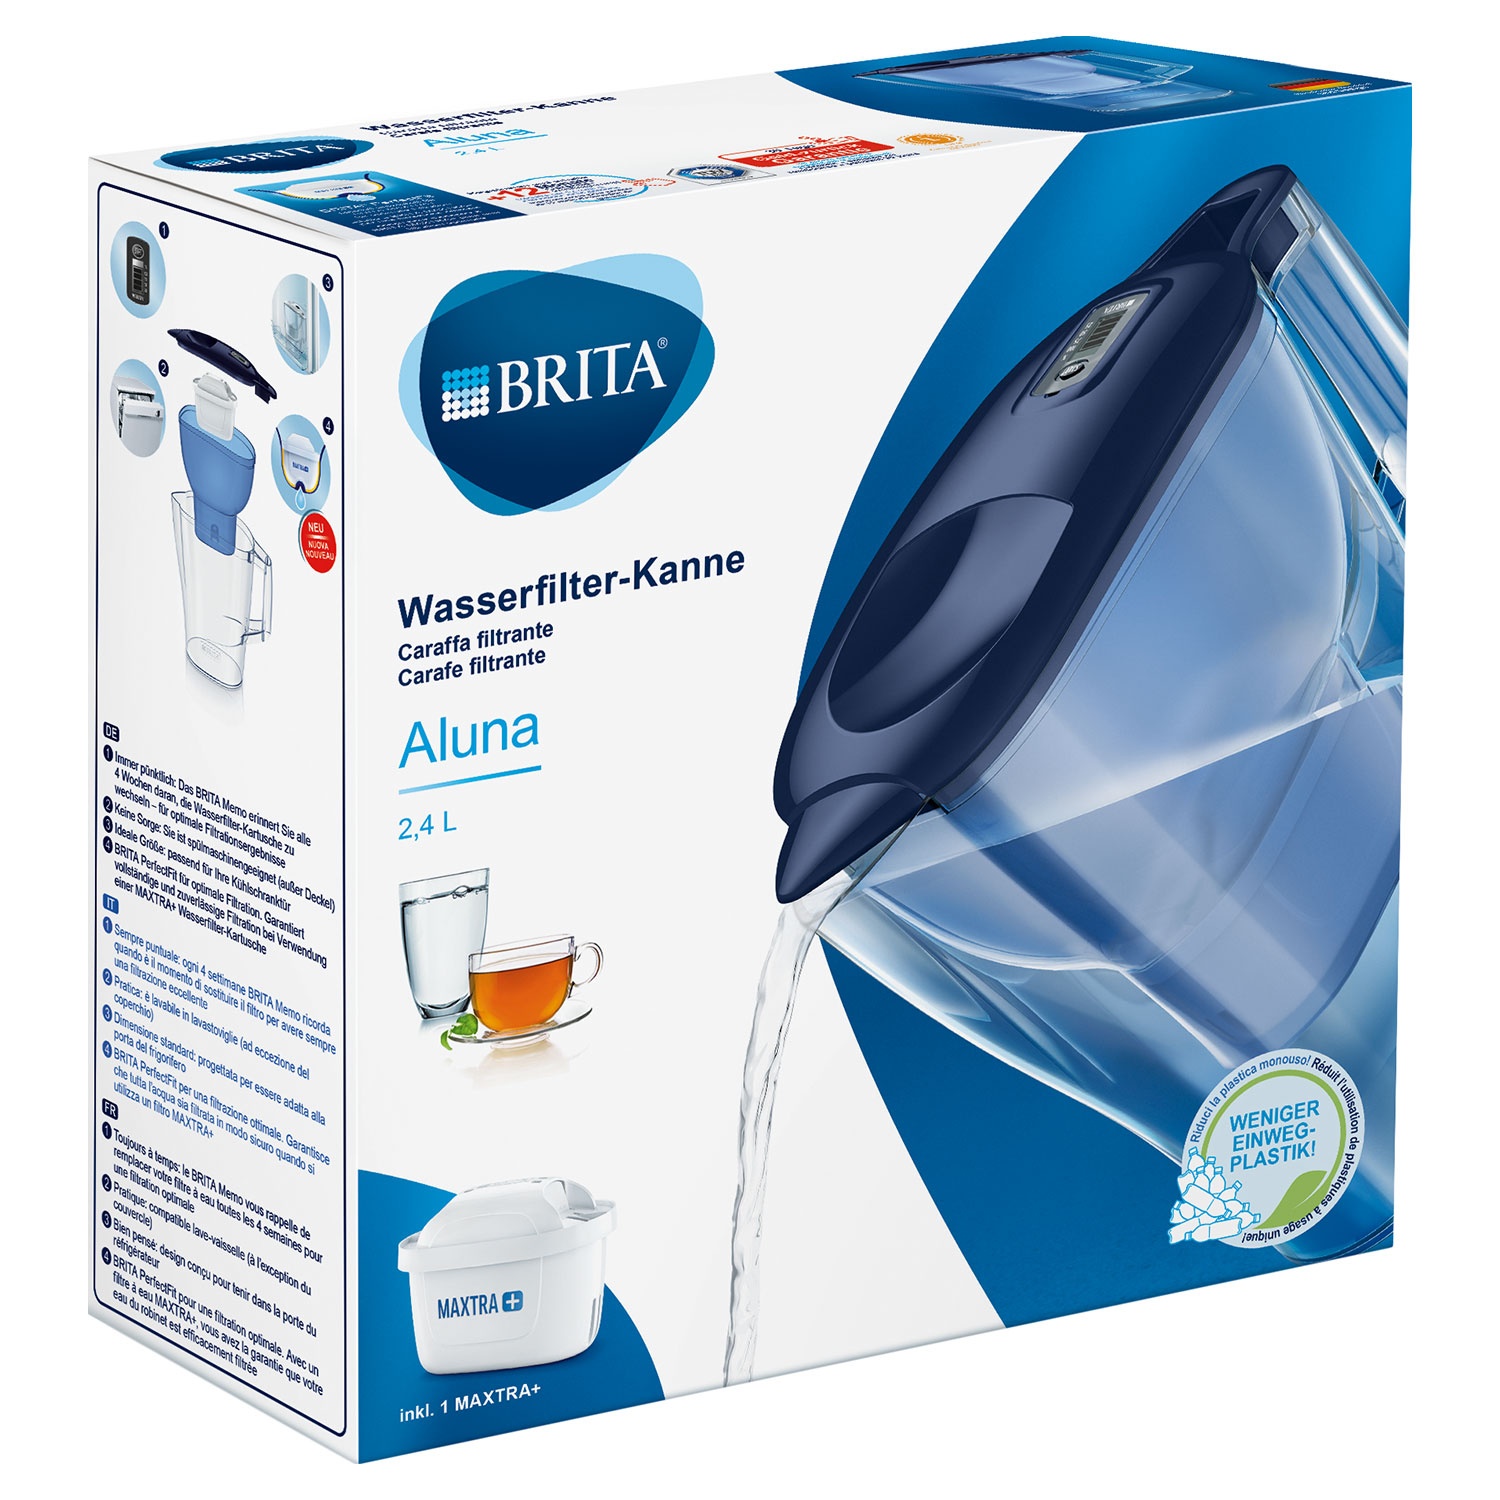 BRITA® Wasserfilter-Kanne Aluna